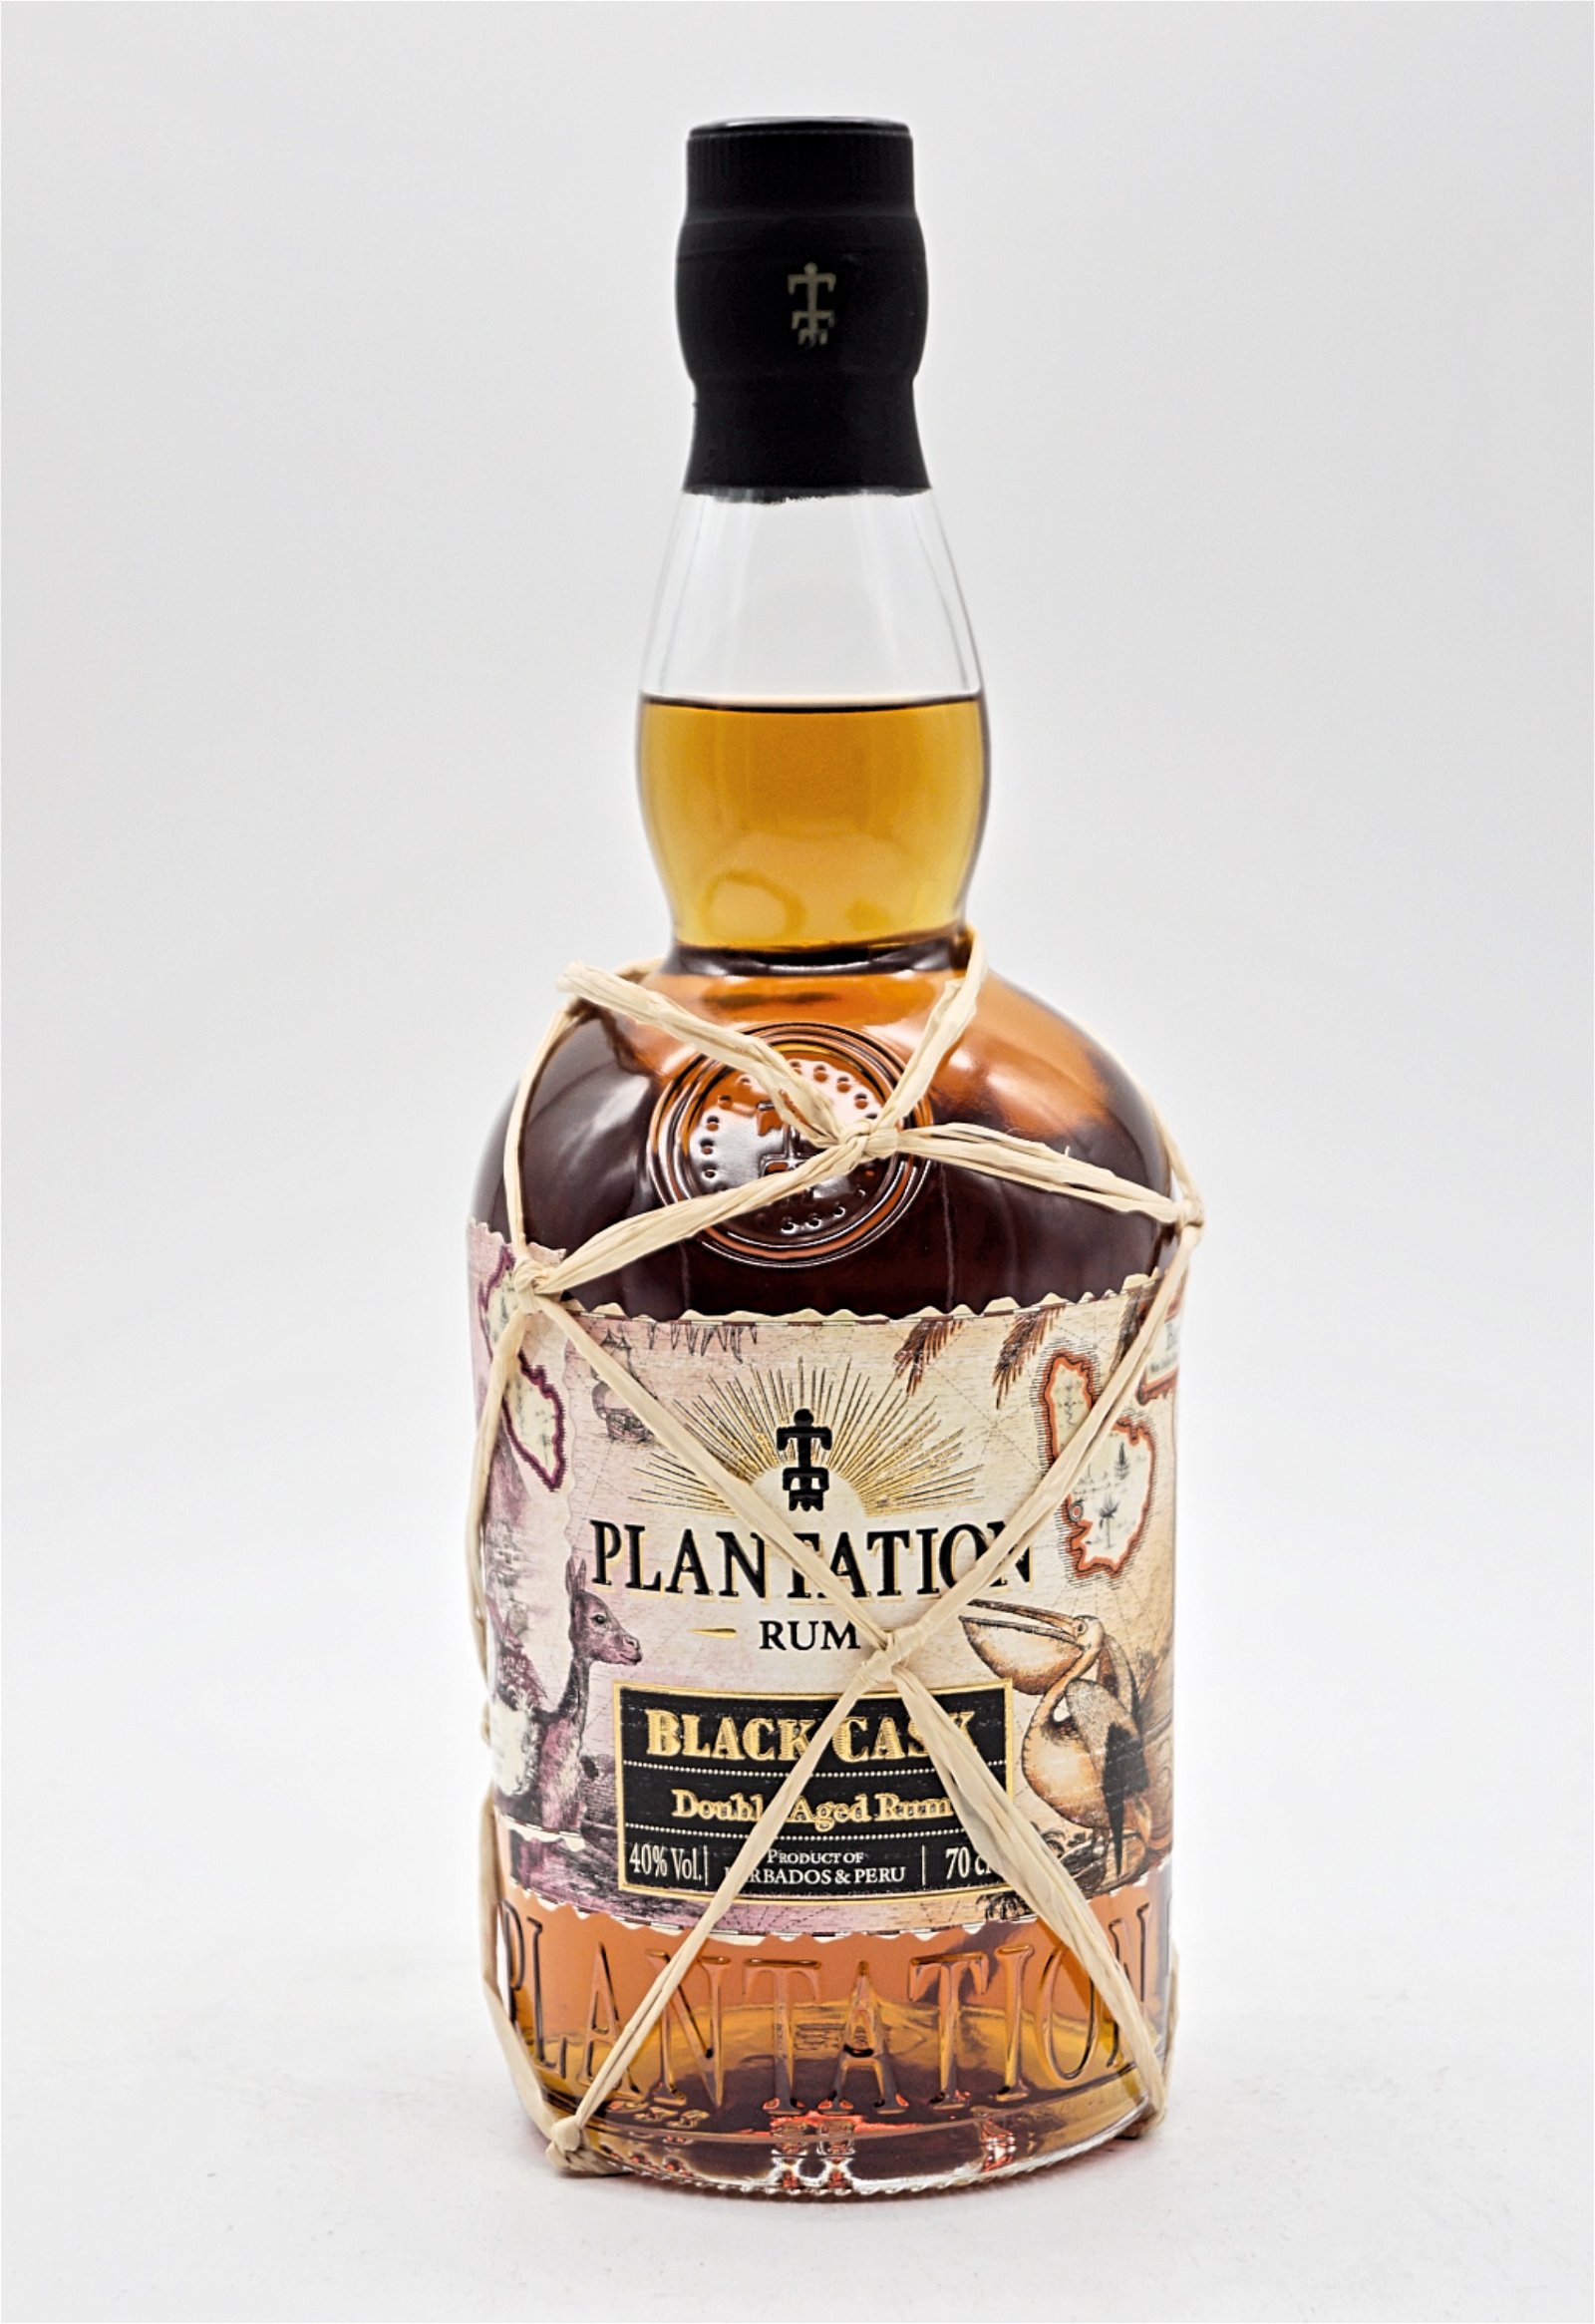 Plantation Rum Black Cask Double Aged Rum